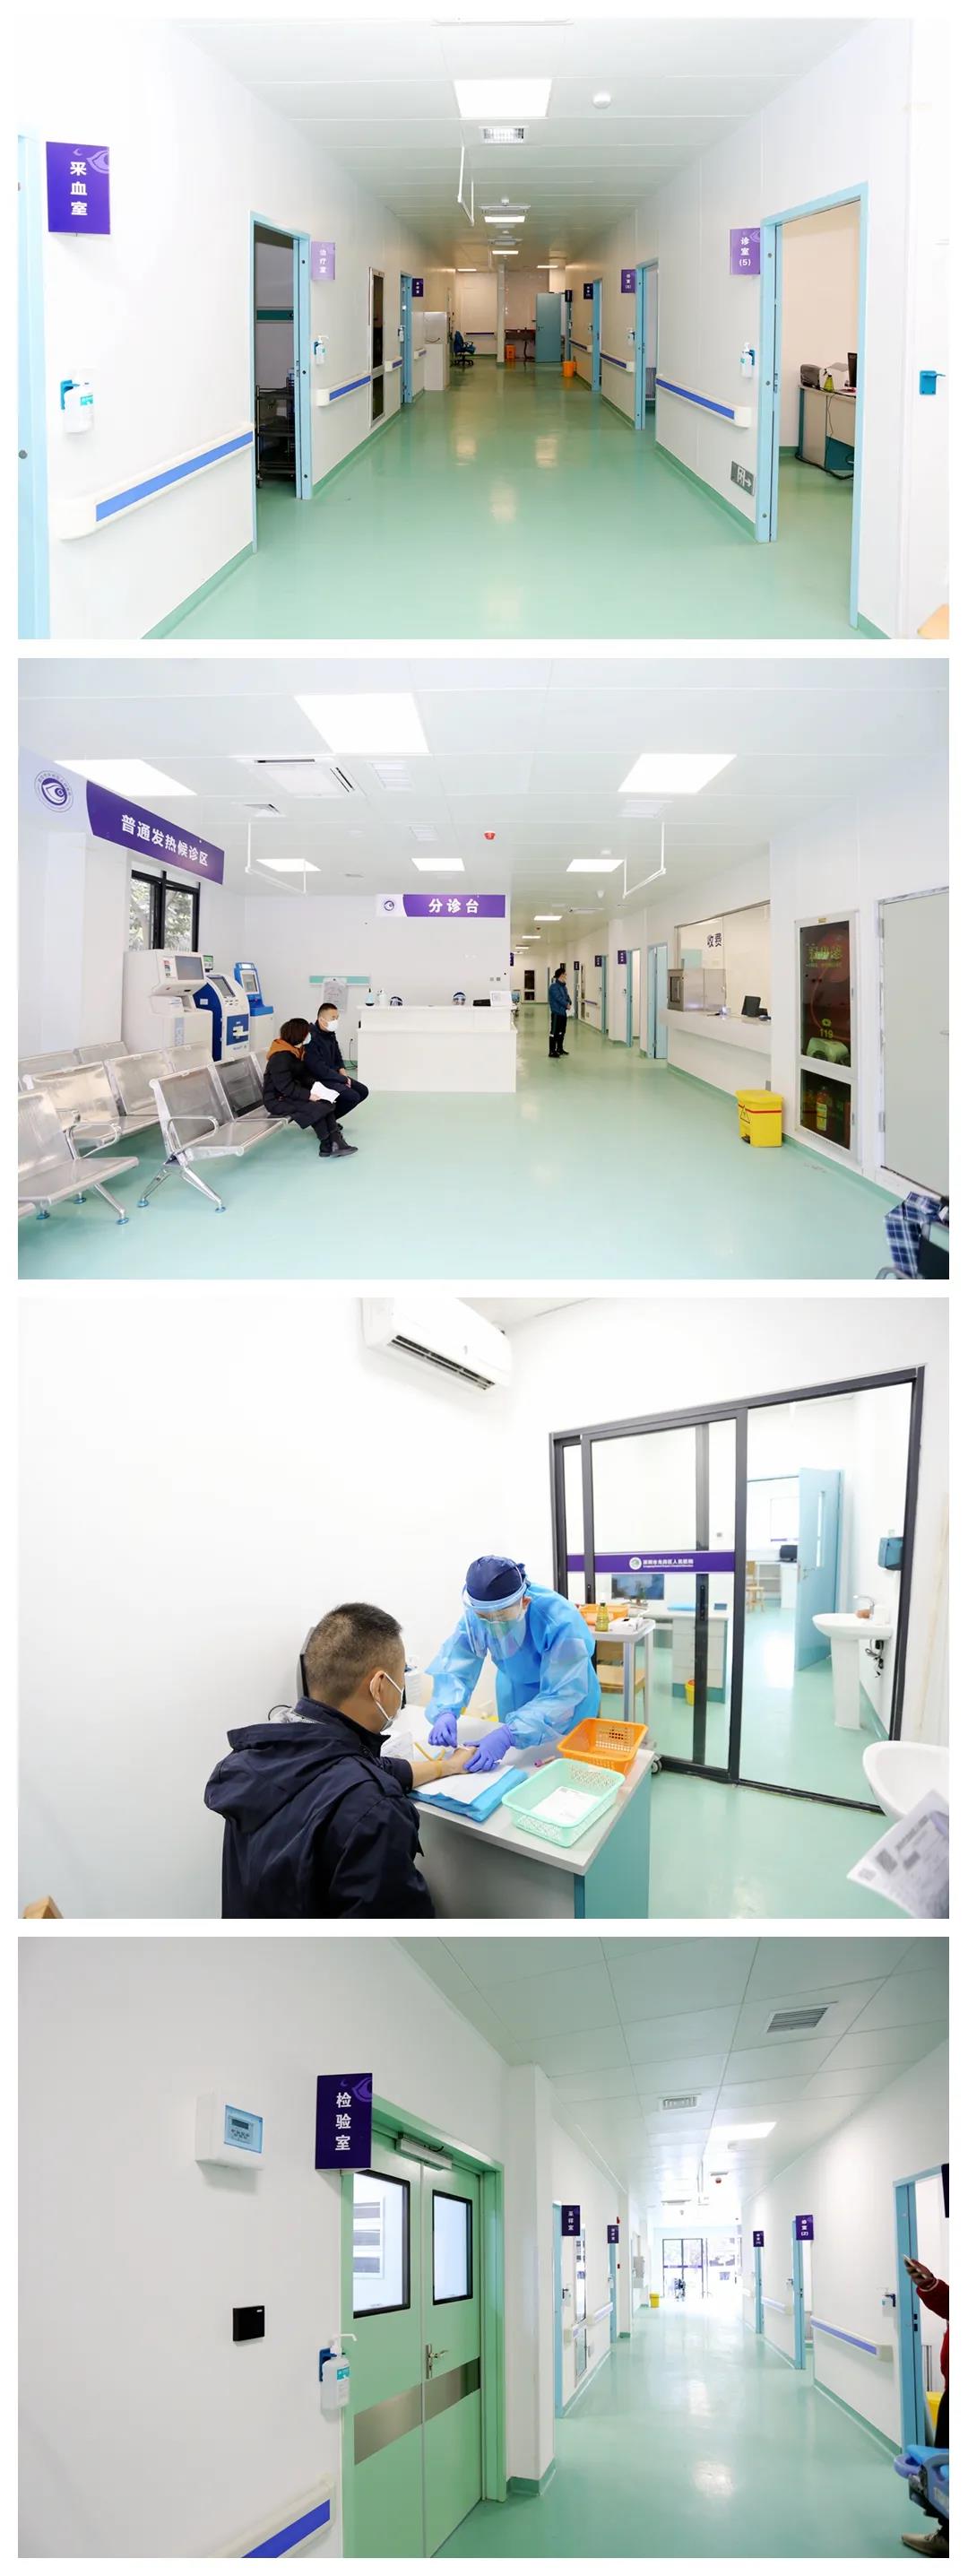 熱烈祝賀龍崗人民醫院感染性疾病科新樓順利竣工